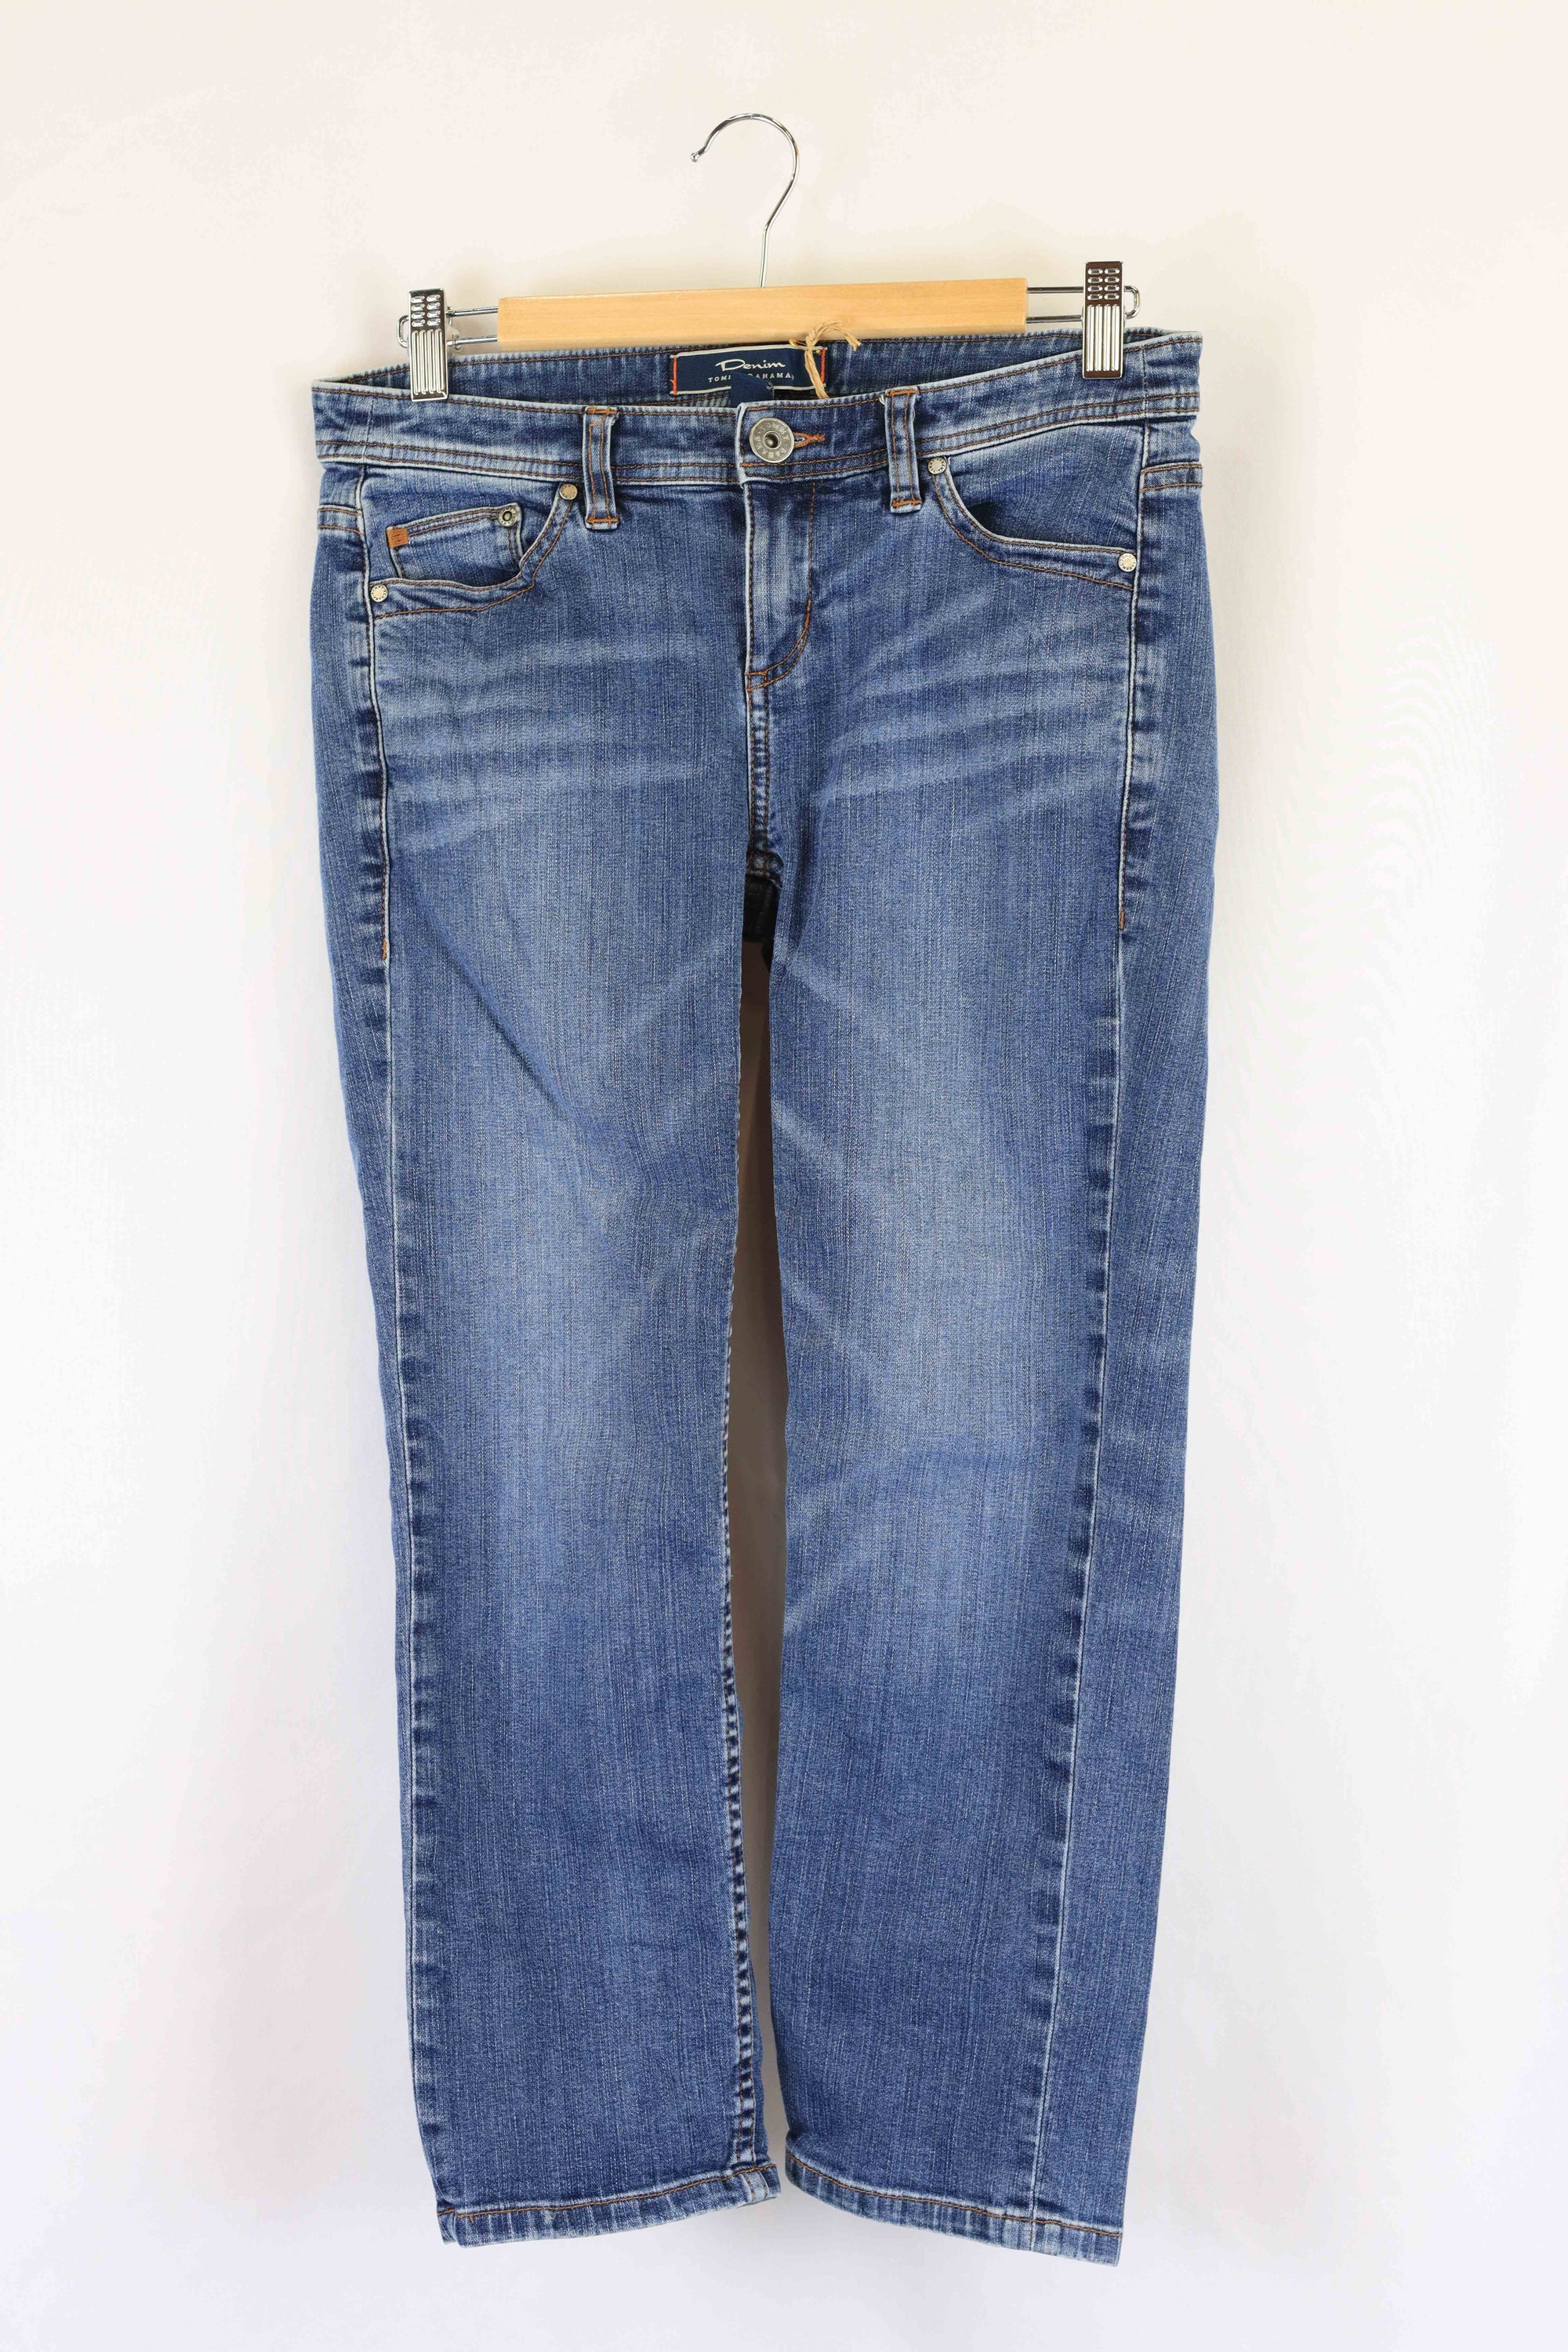 Uniqlo Peach 3/4 Jeans L - Reluv Clothing Australia